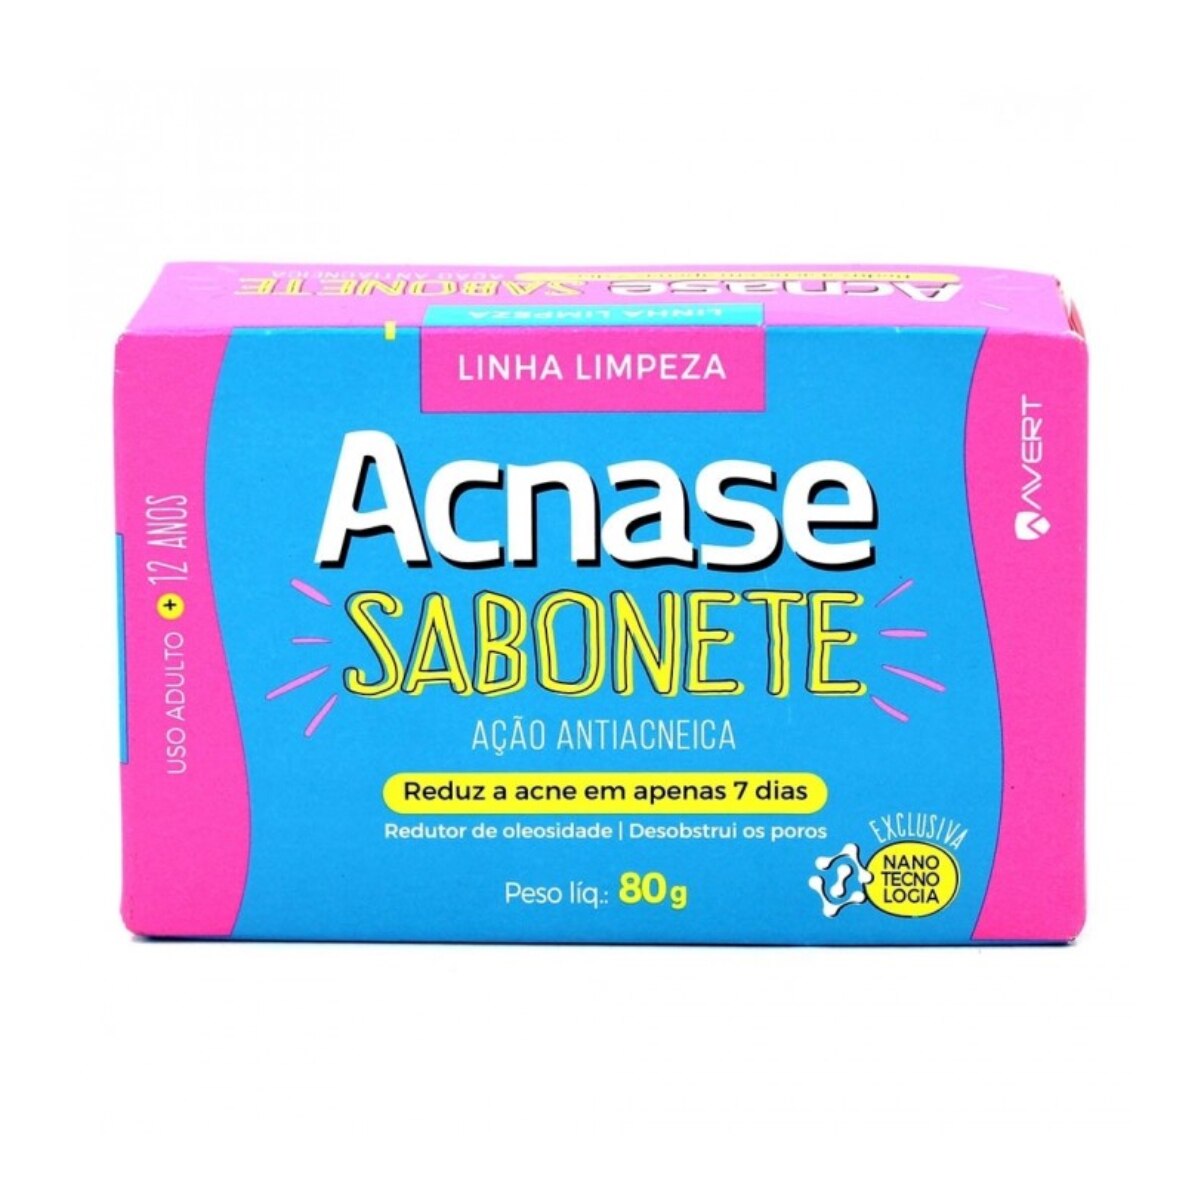 Sabonete Acnase Acao Antiacneica 80g